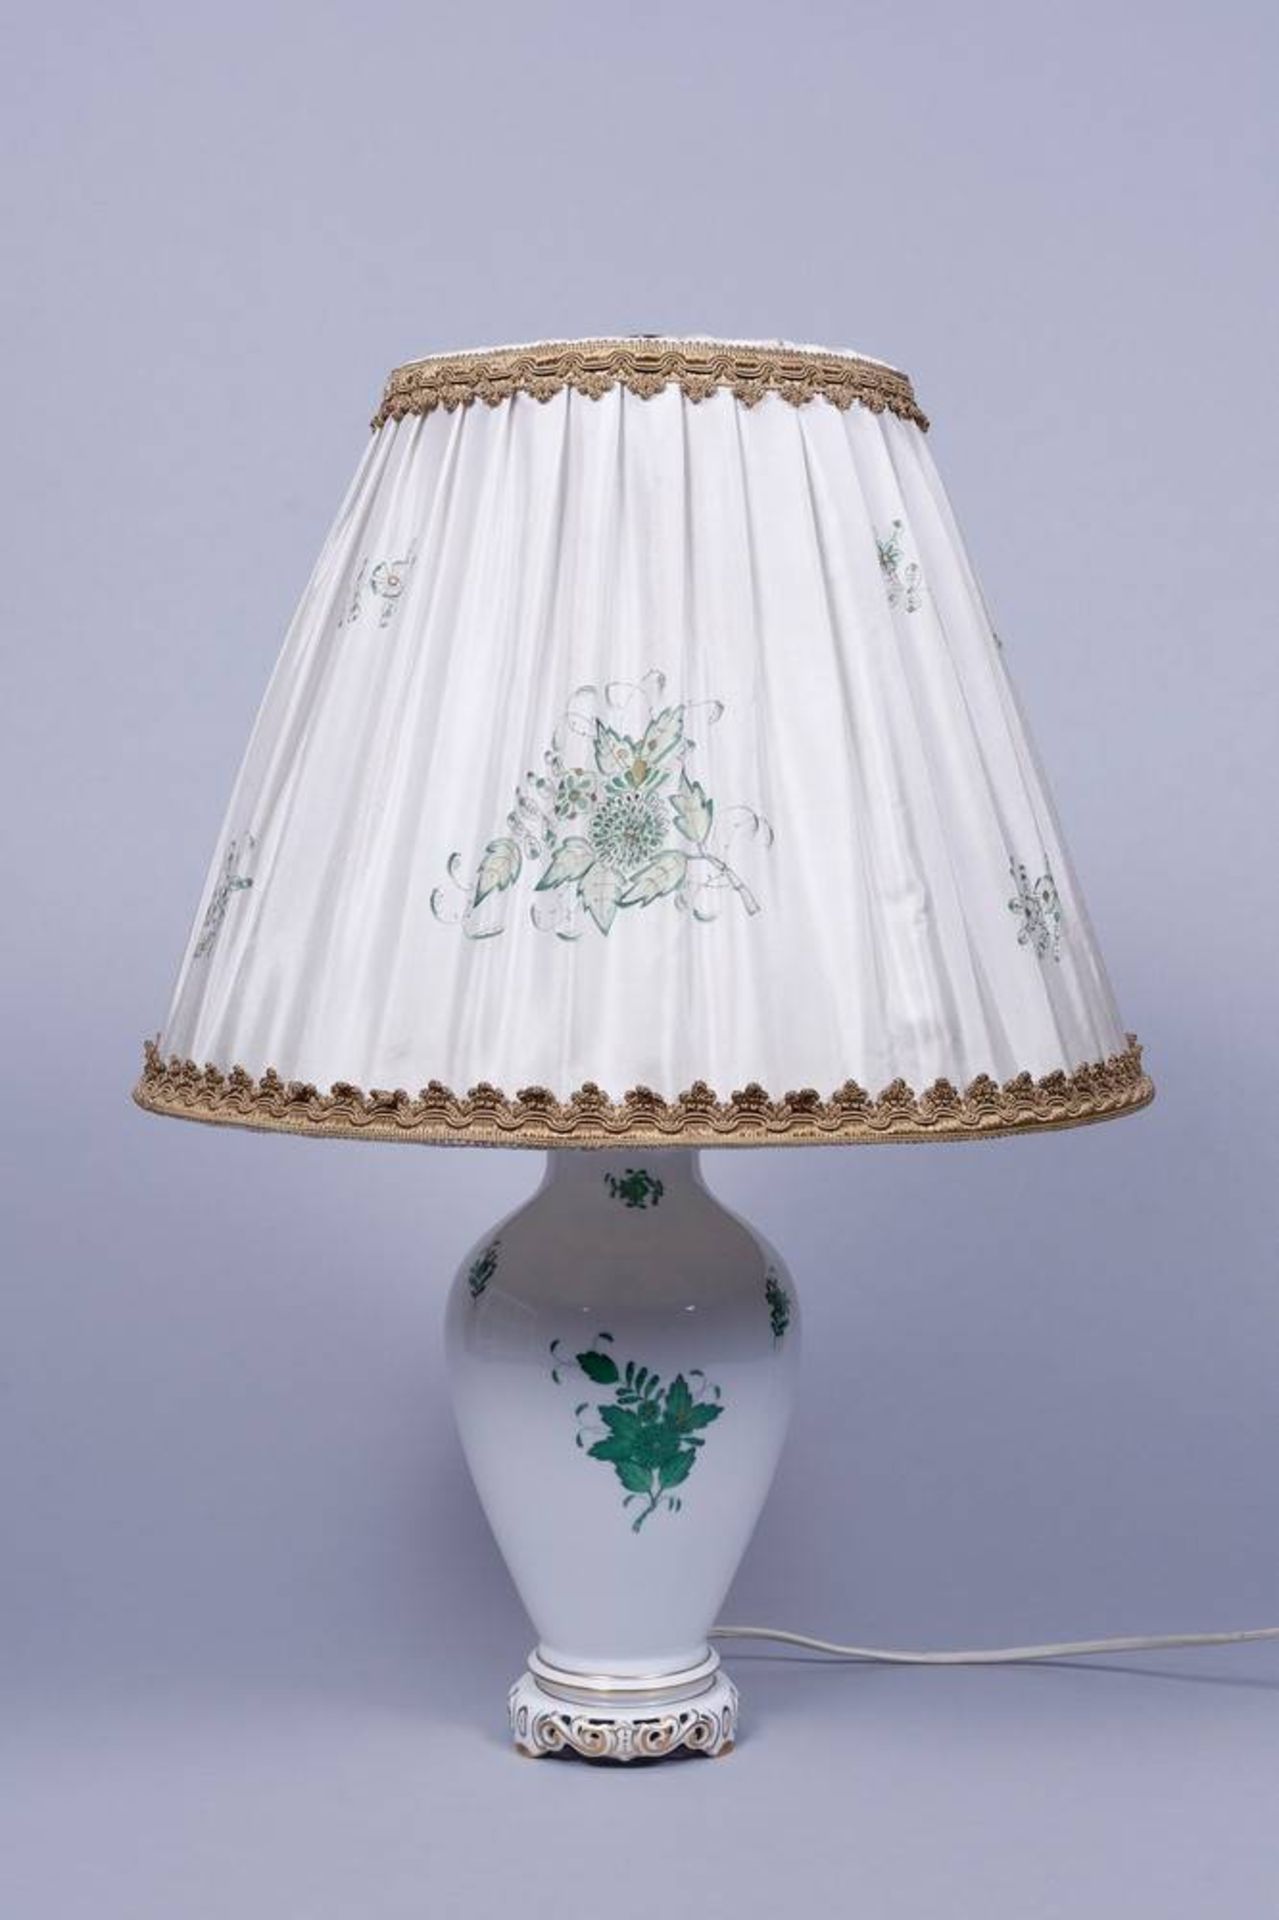 Tischlampe, Herend, 20.Jh., Dekor "Apponyi grün" Porzellan, grün und gold bemalt, auf